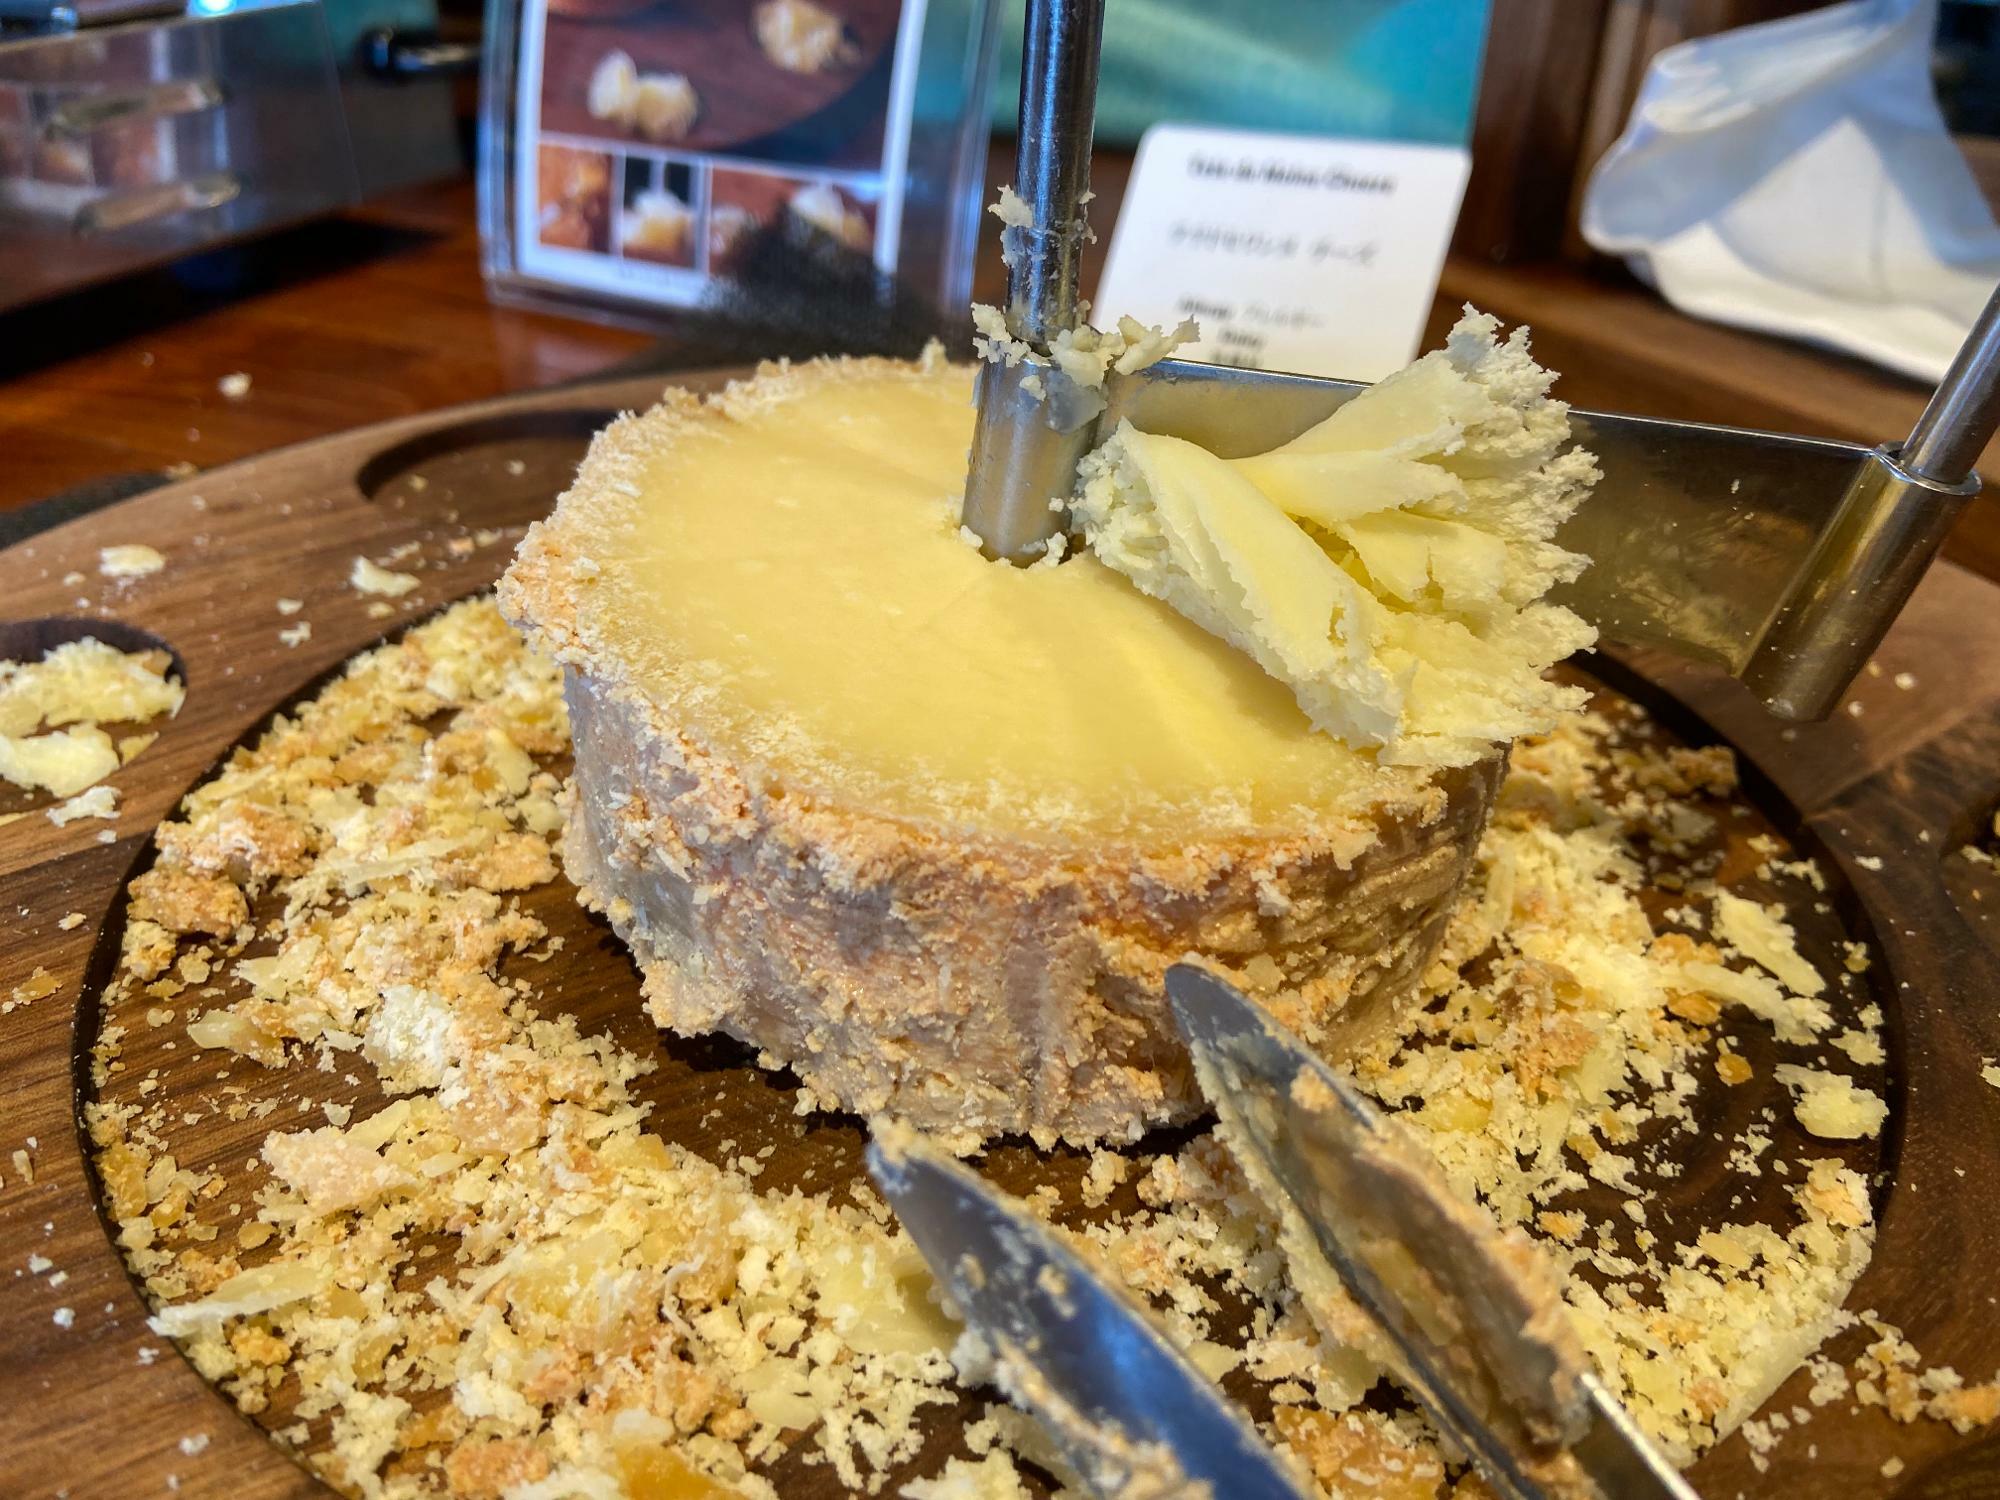 HIYORIオーシャンリゾートの朝食メニューより。削ったチーズにマヌカハニーをかけると朝から最高に贅沢気分が味わえます。